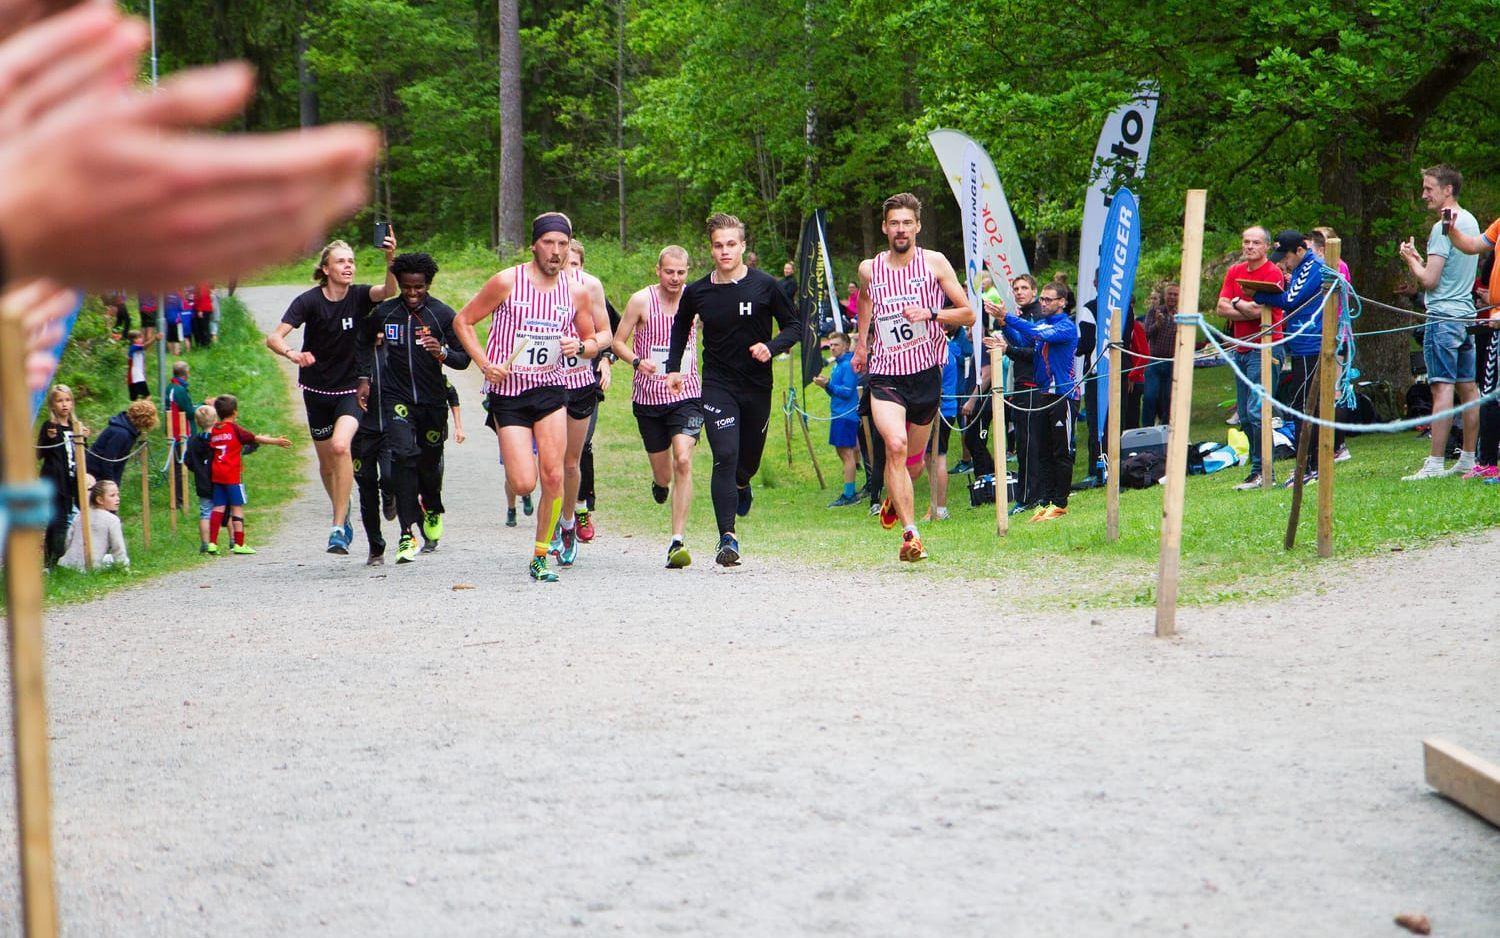 Bilder: JOHANNA JOSEPHSSON Patrik Andersson (i pannband) springer i mål tillsammans med resten av laget. Att Hälle IF springer först över mållinjen är en vanlig syn i Marathonstafetten.